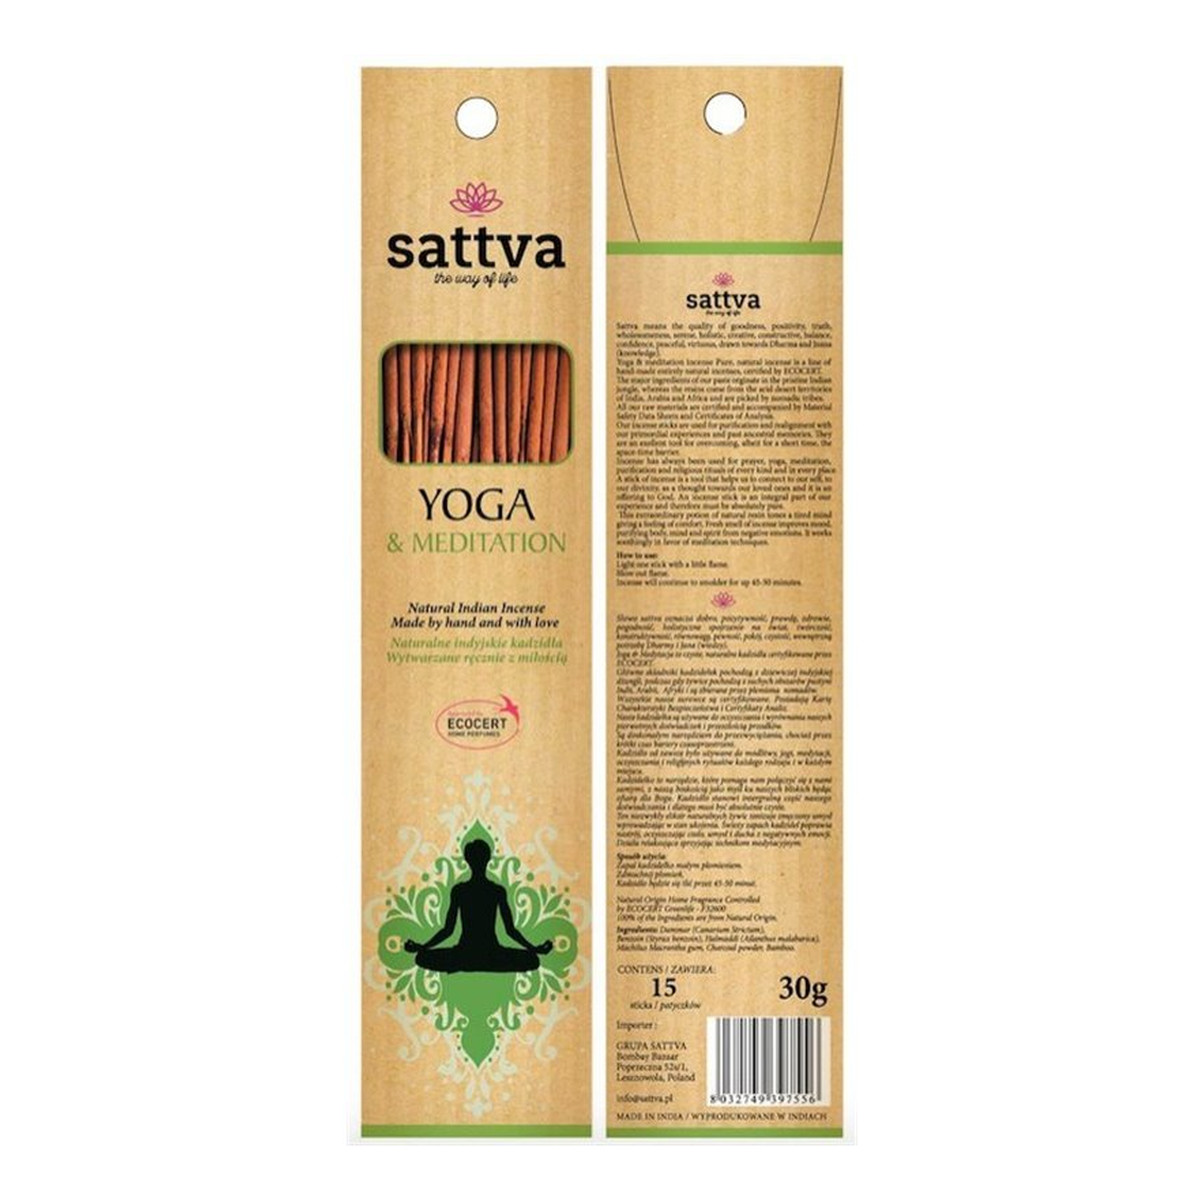 Sattva Naturalne Indyjskie Kadzidła Wytwarzane Ręcznie Z Miłością Yoga&Meditation 15szt 30g